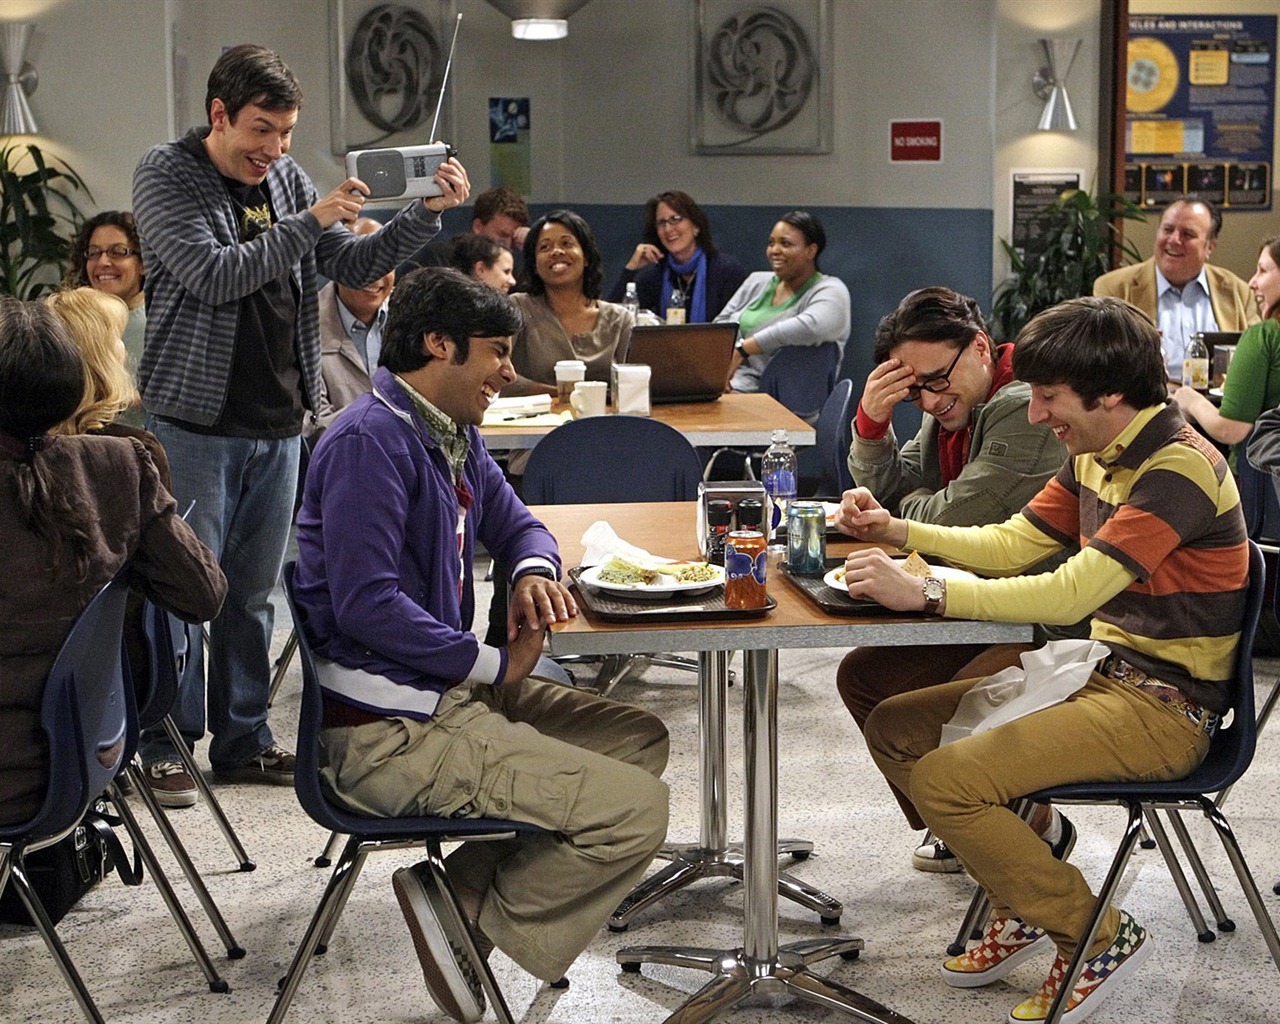 The Big Bang Theory 生活大爆炸 电视剧高清壁纸17 - 1280x1024